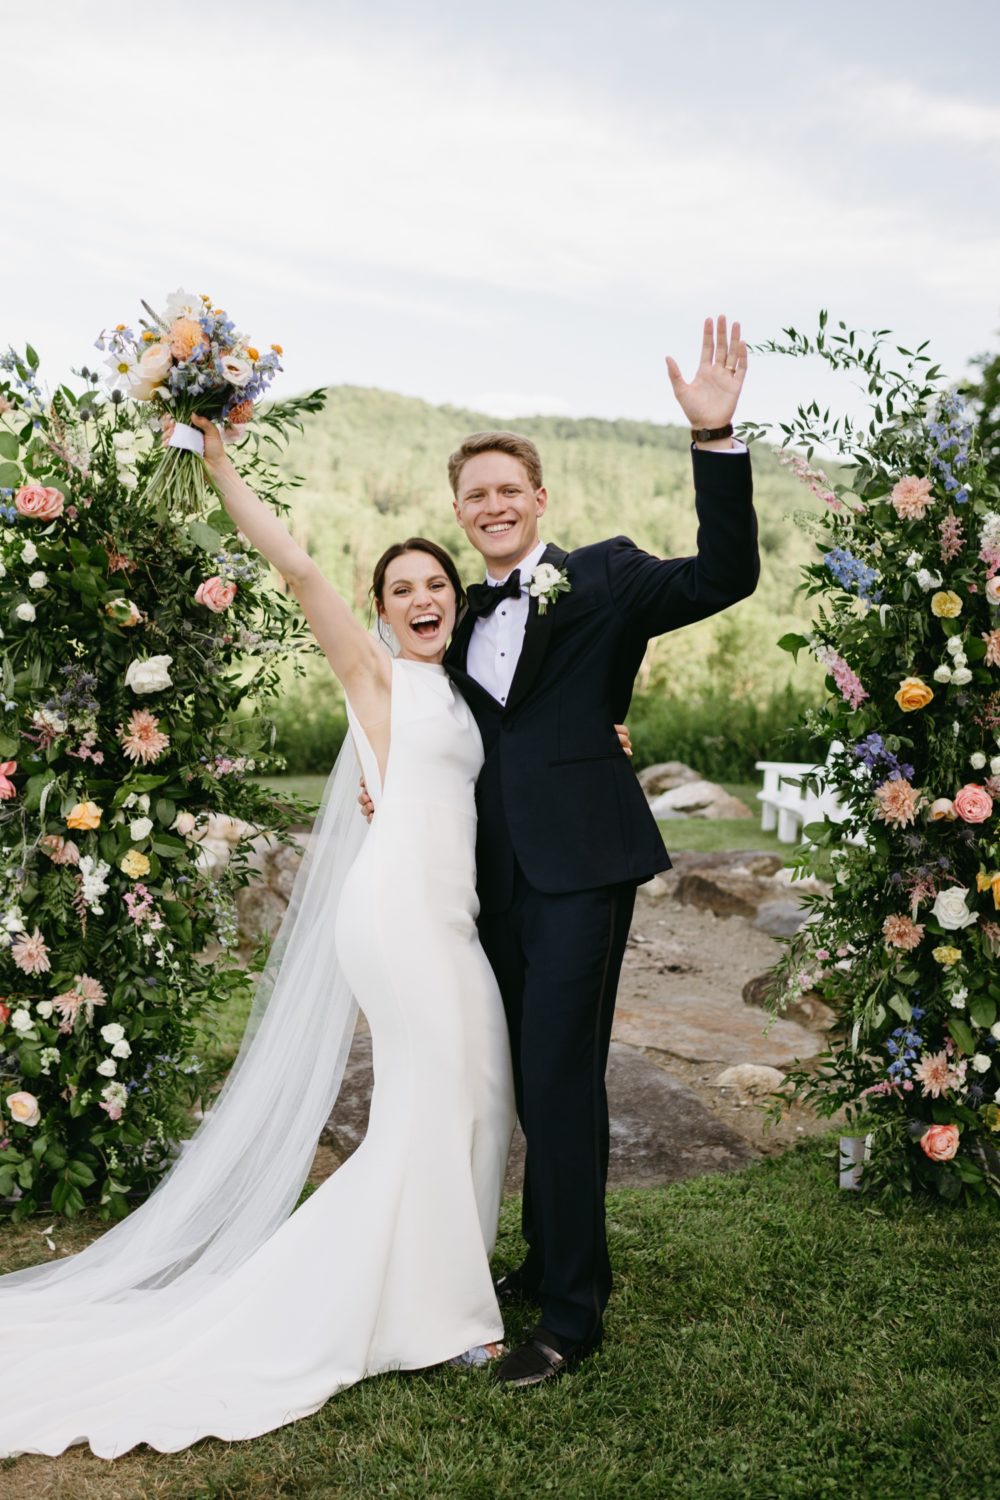 woodstock inn wedding bride and groom waving smiling